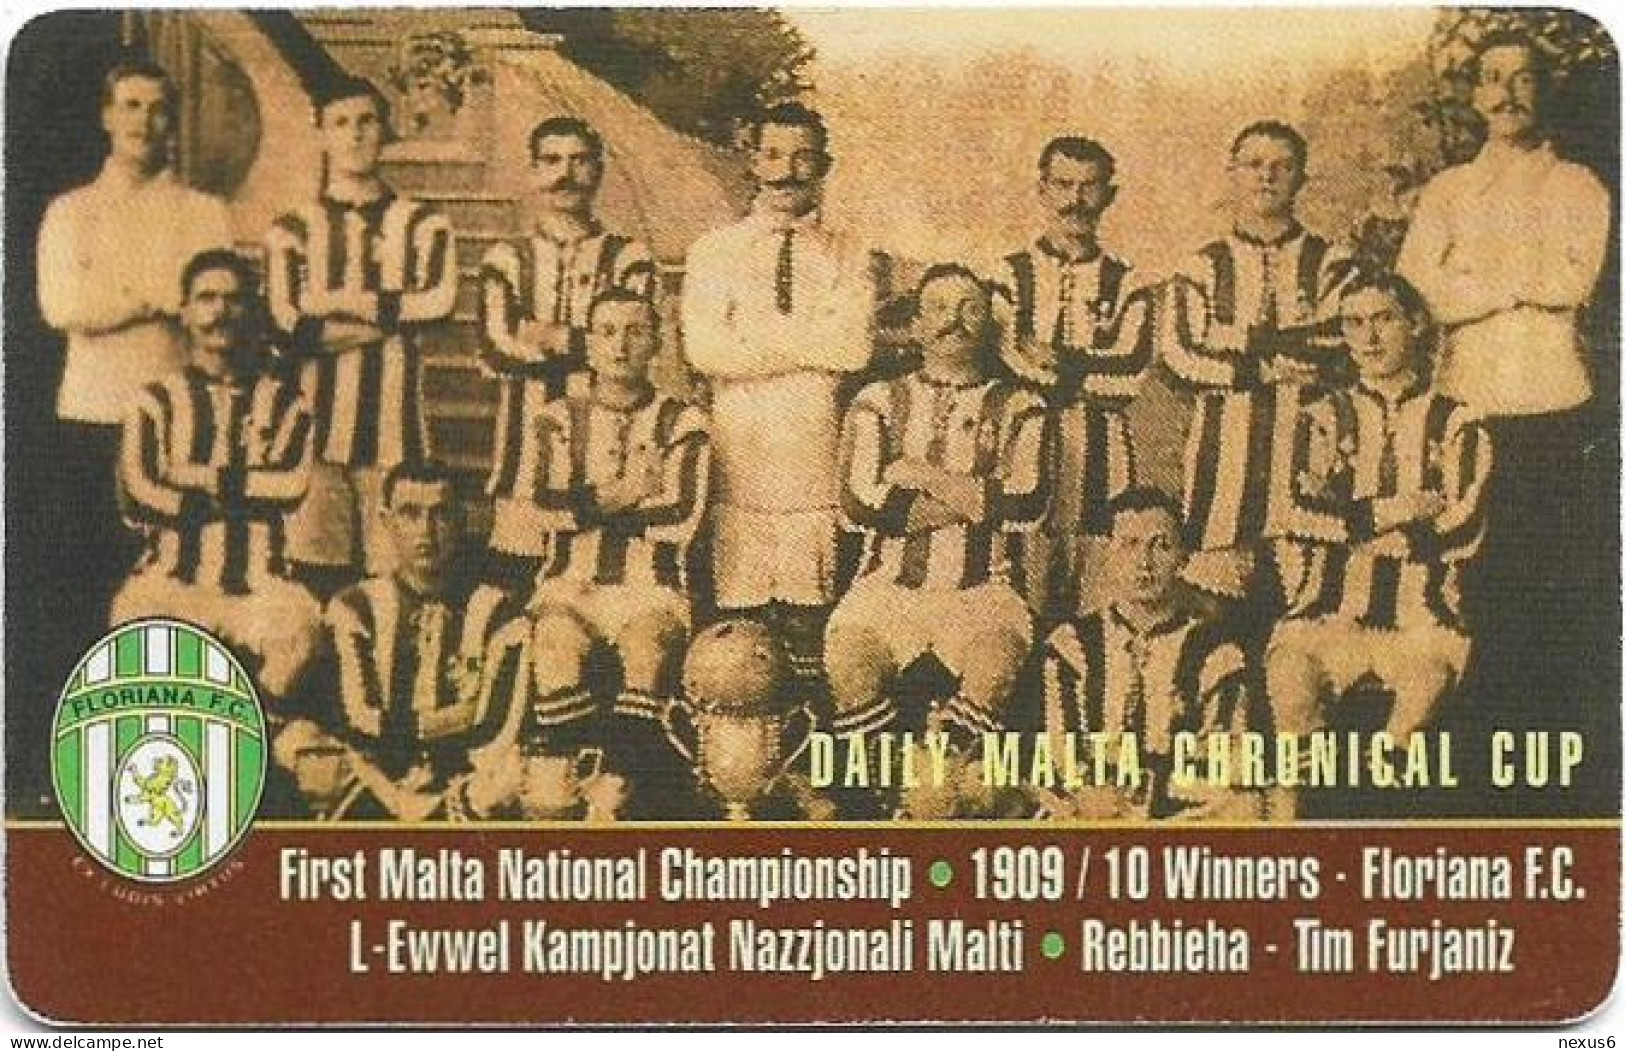 Malta - Maltacom - Floriana Football Club, 12.1999, 40U, 10.000ex, Used - Malte